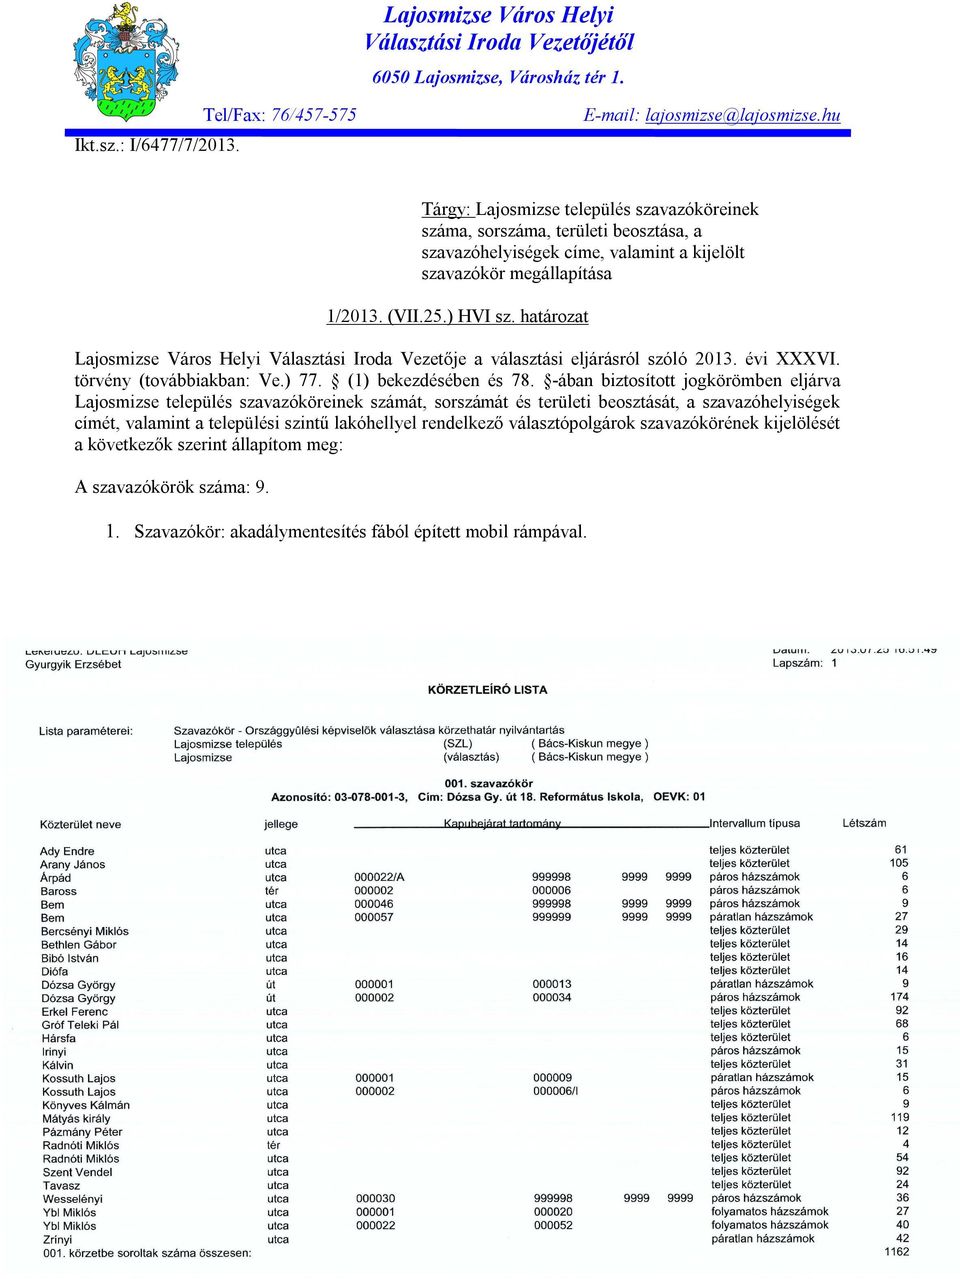 határozat Lajosmizse Város Helyi Választási Iroda Vezetője a választási eljárásról szóló 2013. évi XXXVI. törvény (továbbiakban: Ve.) 77. (1) bekezdésében és 78.